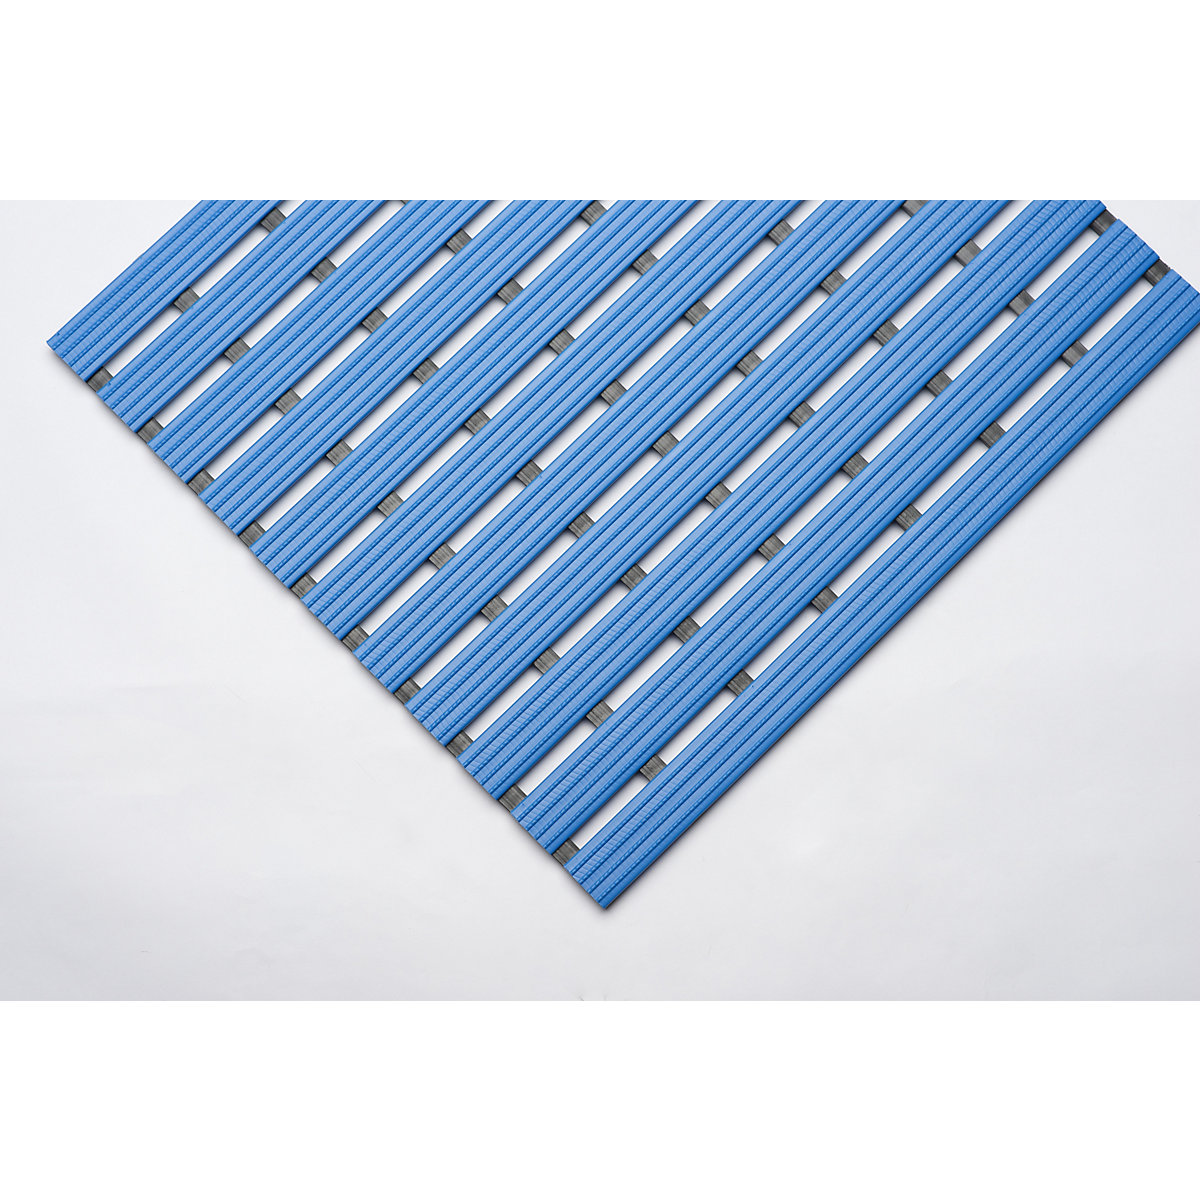 Kunststof mat, per str. mtr., loopvlak van harde kunststof, antislip, breedte 800 mm, blauw-8